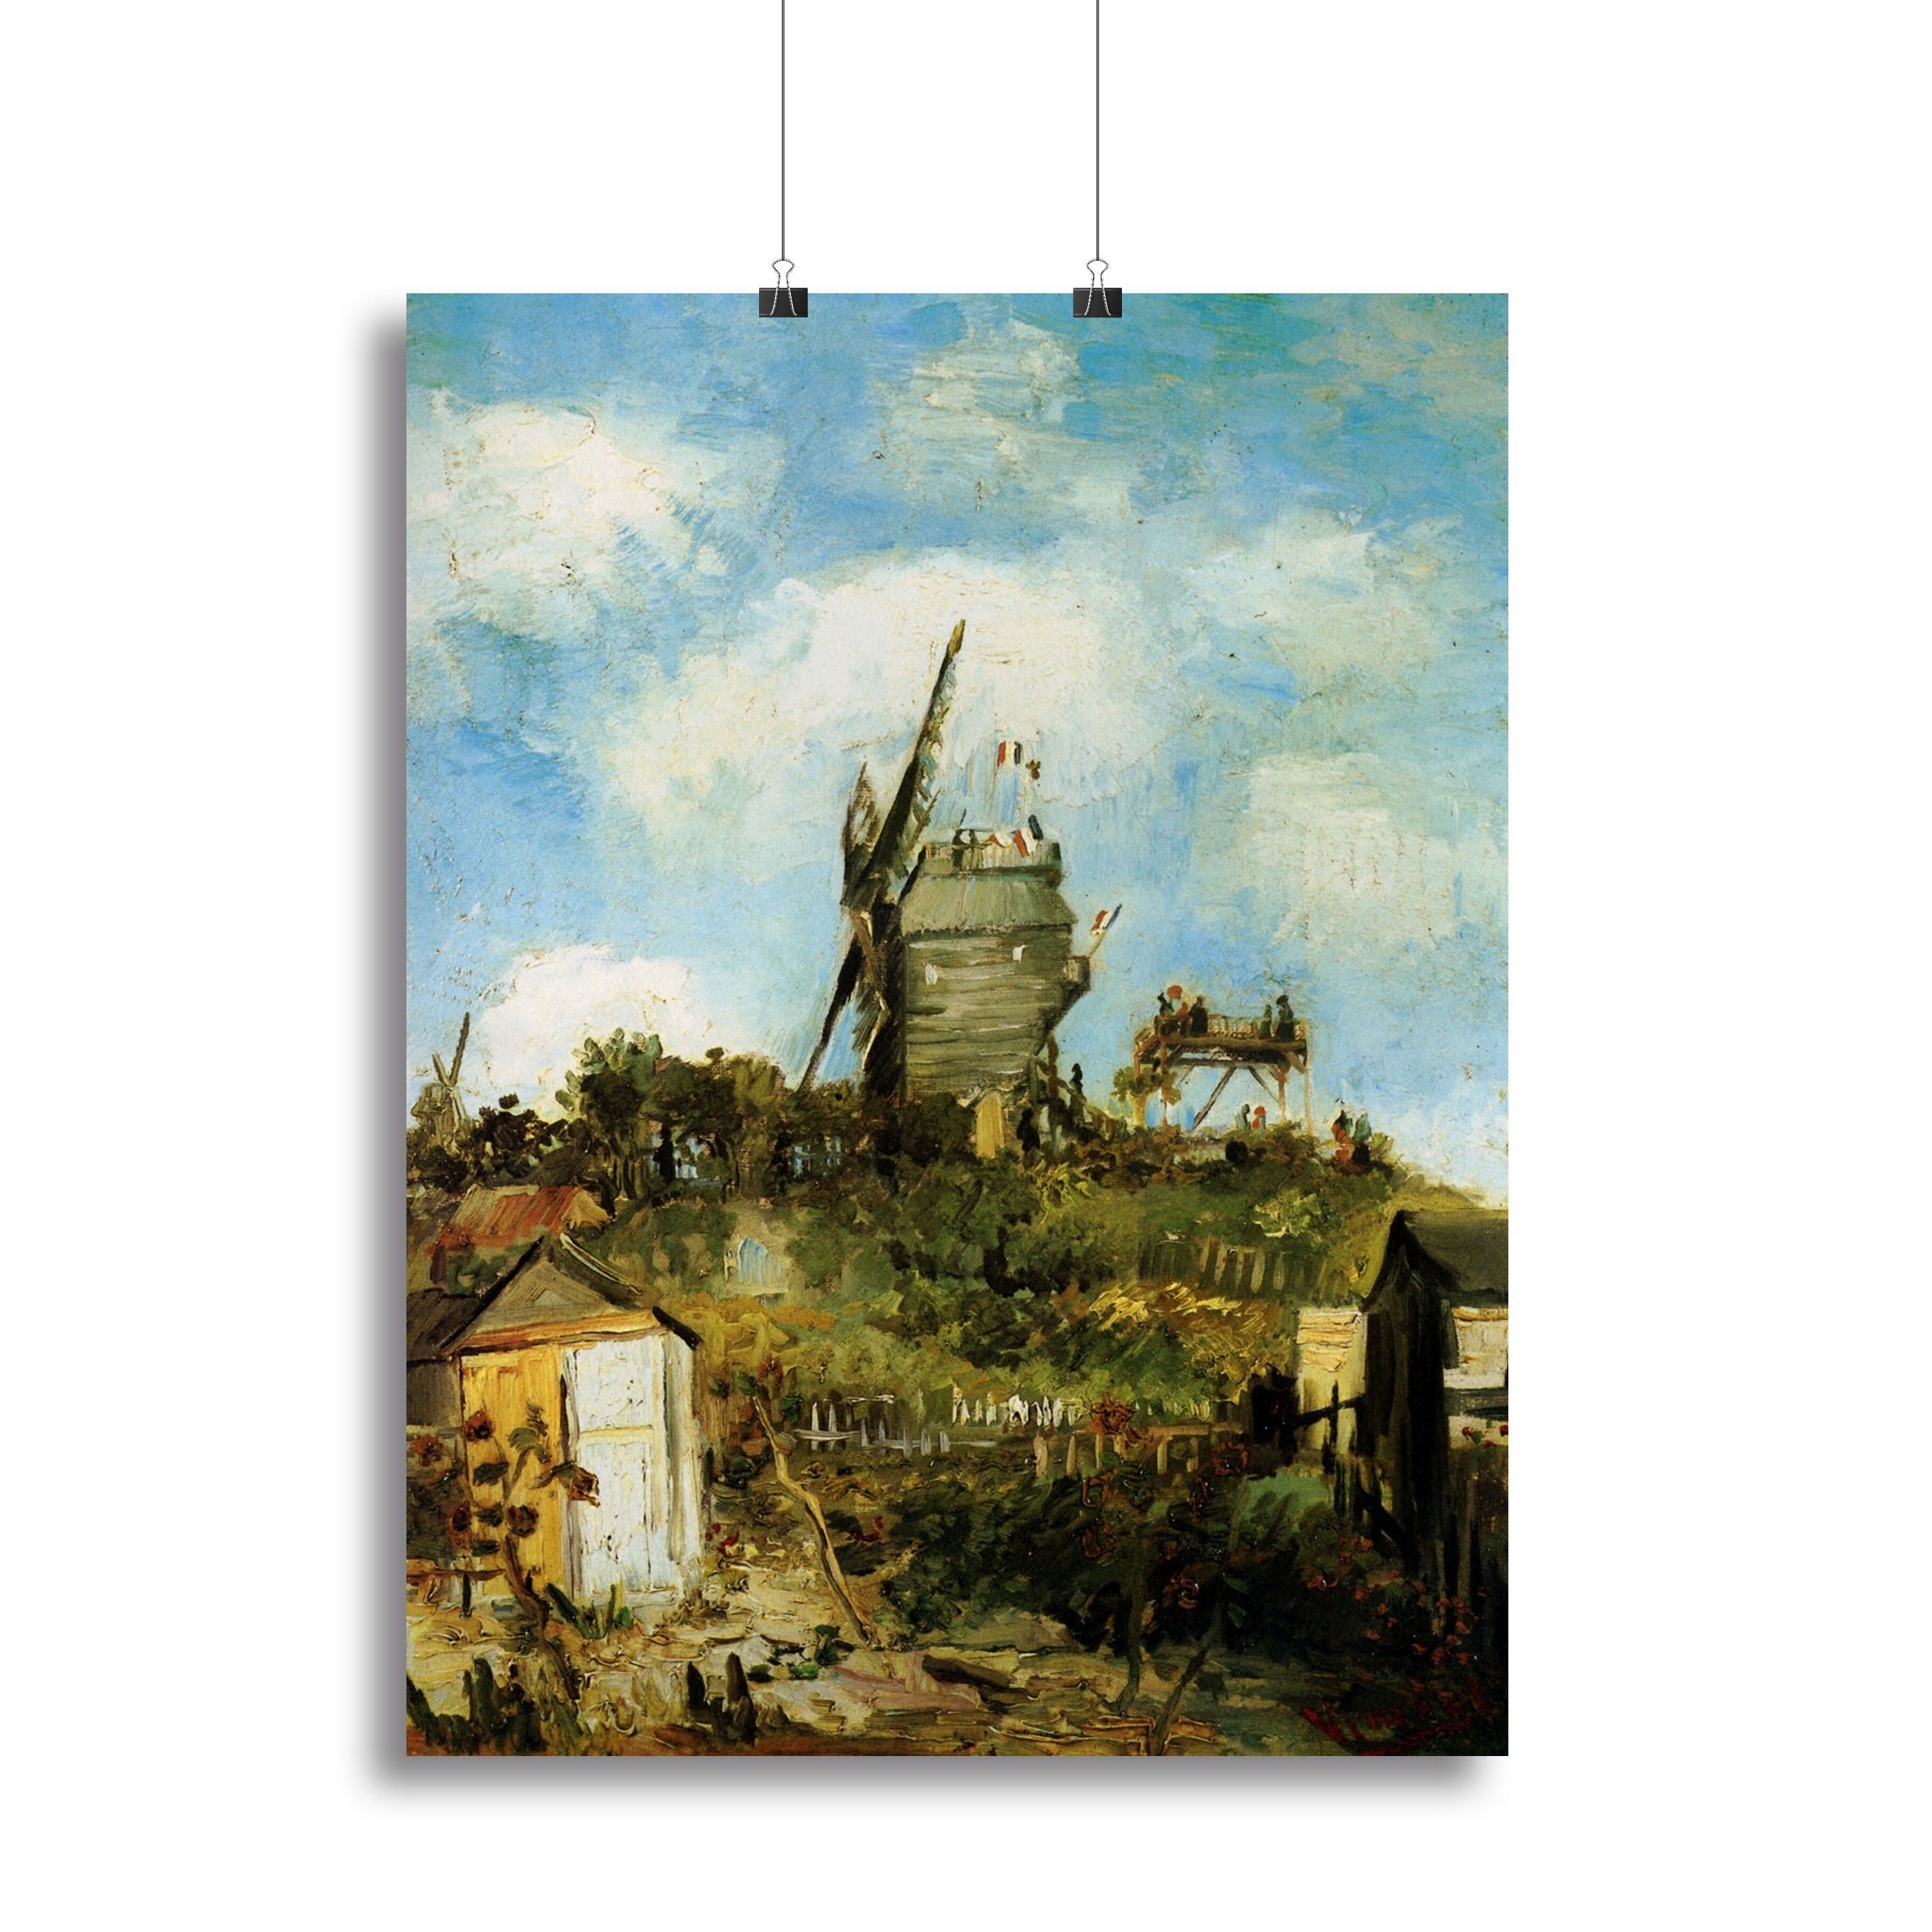 Le Moulin de la Galette by Van Gogh Canvas Print or Poster - Canvas Art Rocks - 2